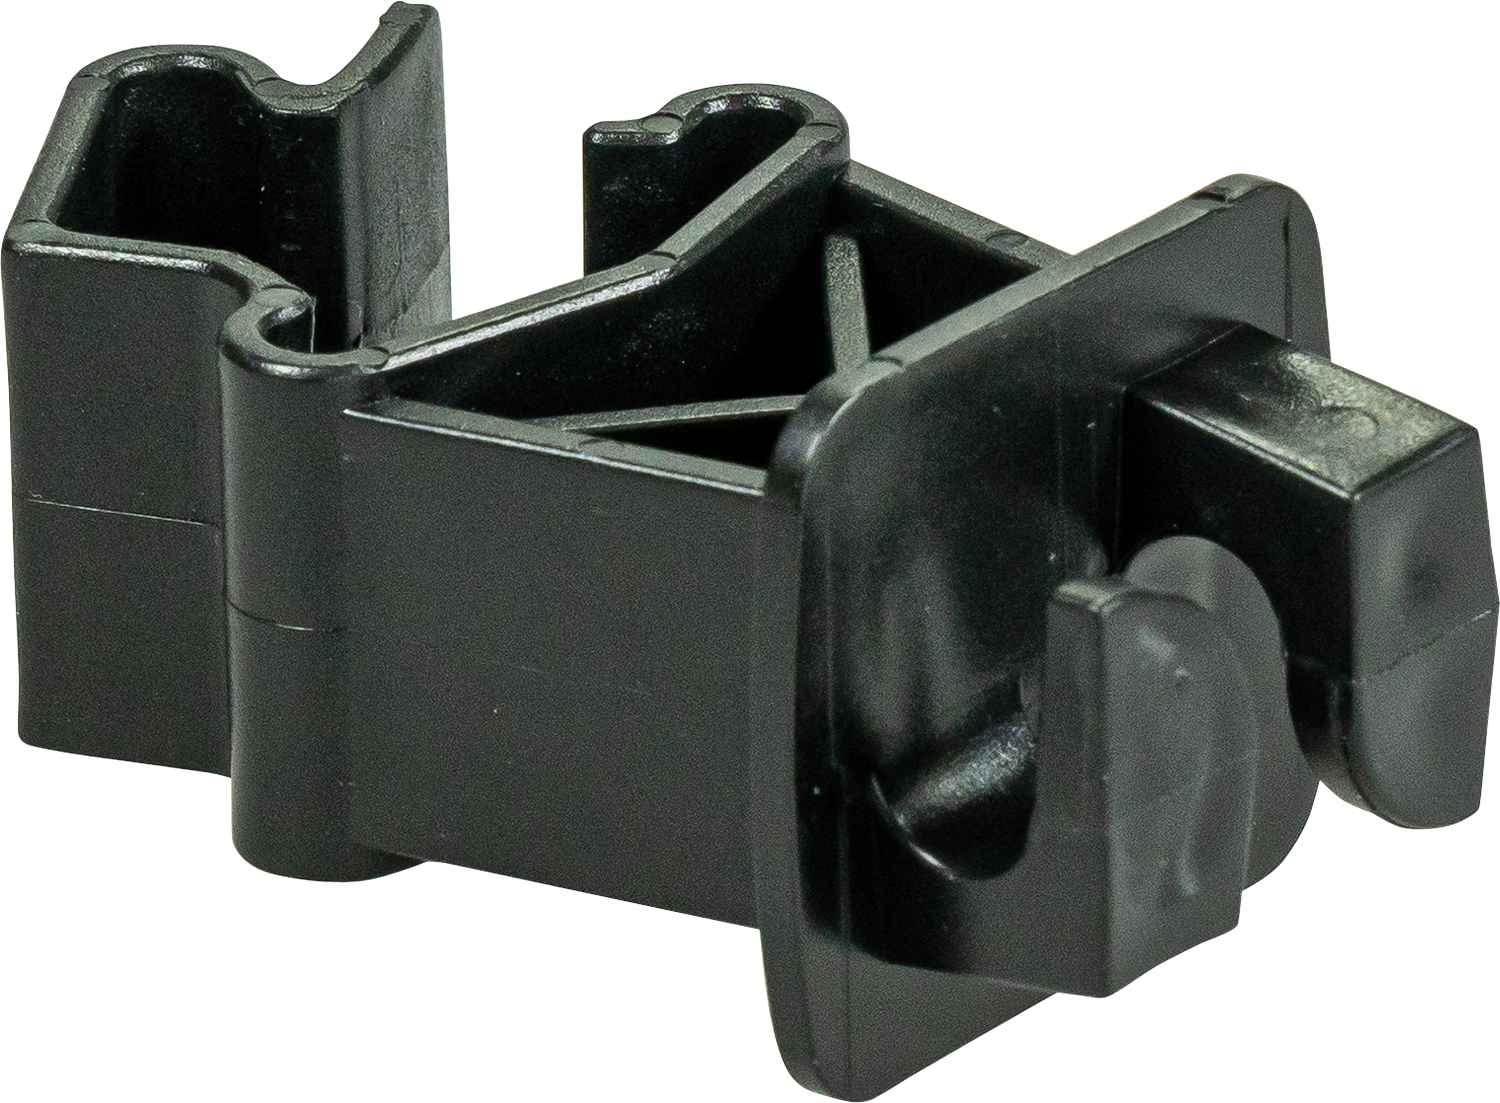 Standard-Isolator für T-Pfosten, schwarz